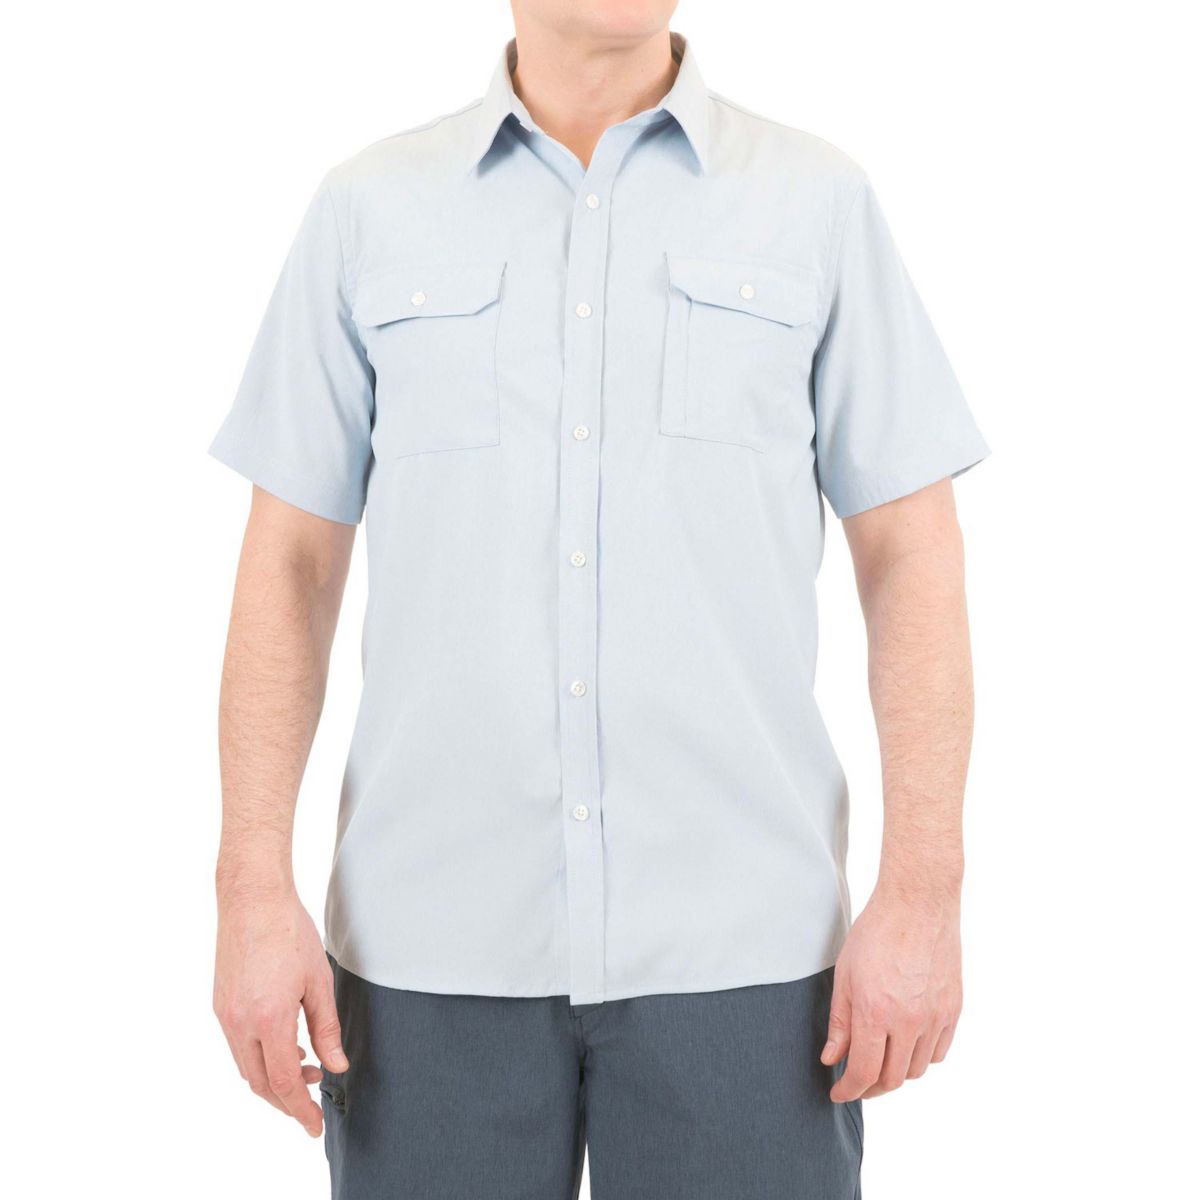 Мужская рубашка стандартного кроя с 3 карманами на пуговицах Mountain and Isles Mountain And Isles